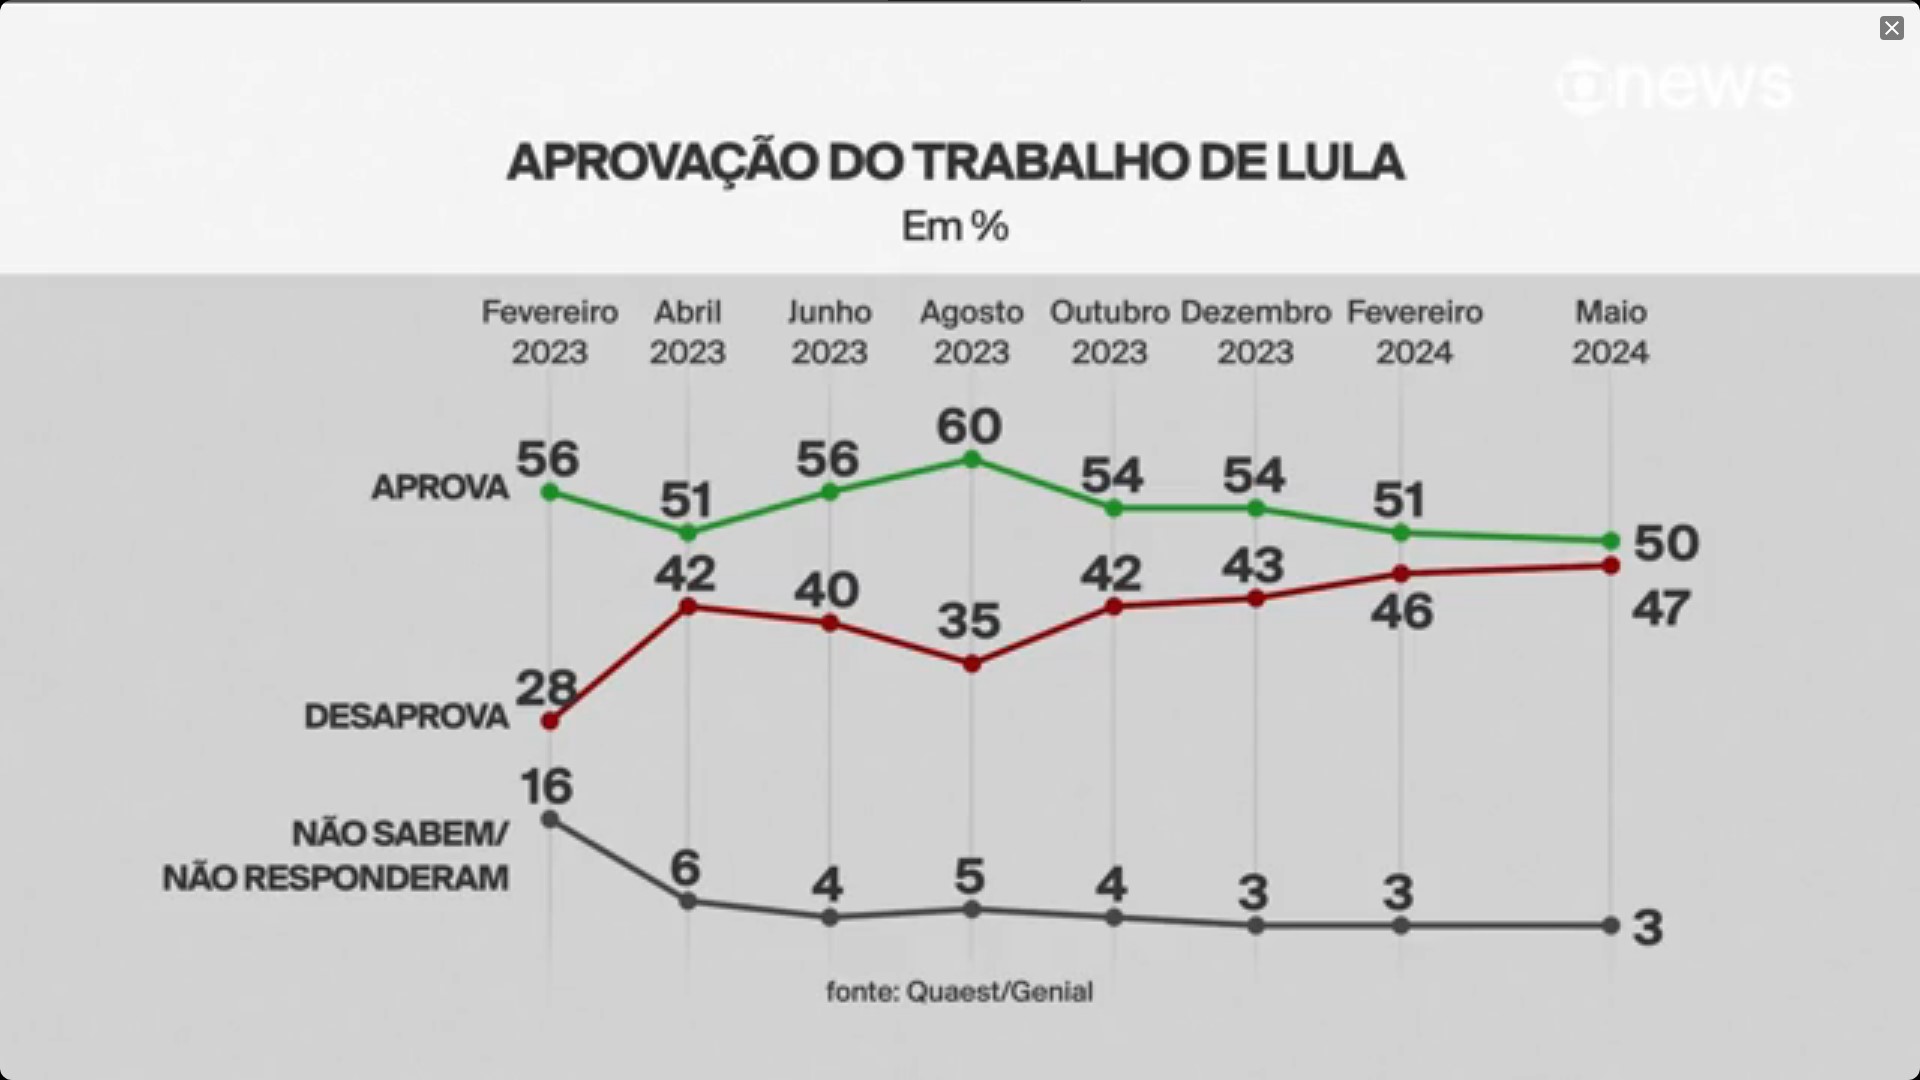 Quaest: 50% aprovam o trabalho de Lula e 47% desaprovam